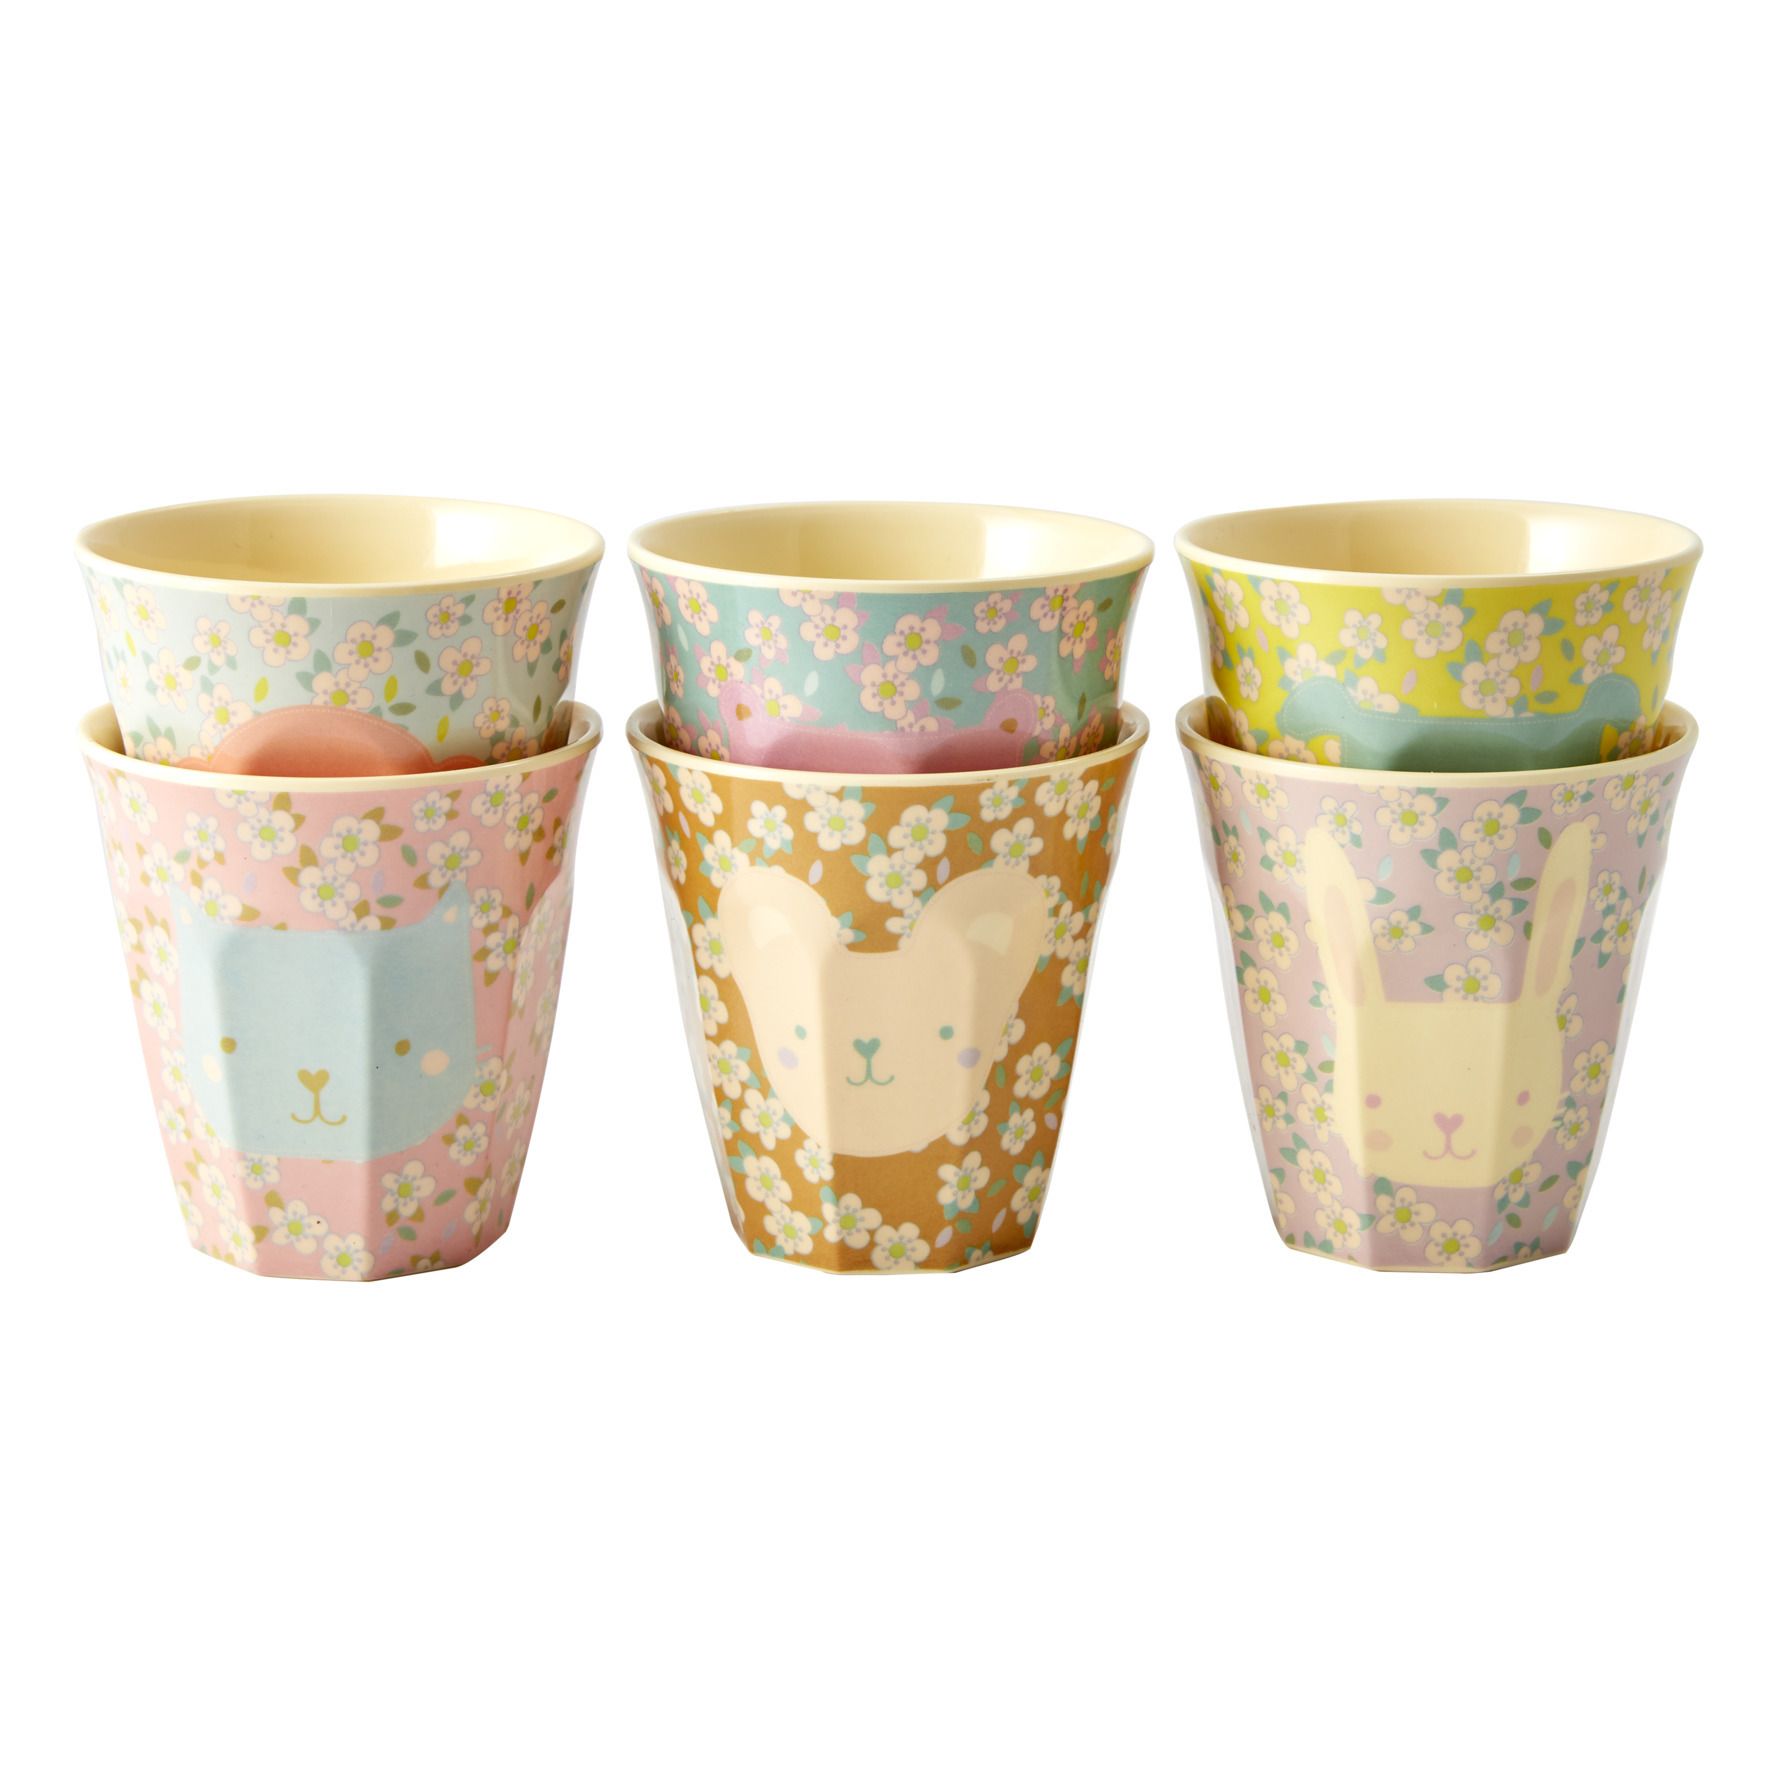 Home Collection Maison Cuisine Vaisselle Accessoires Ensemble de 4 Gobelets en Bambou Motif Fleurs Volatiles Este MacLeod